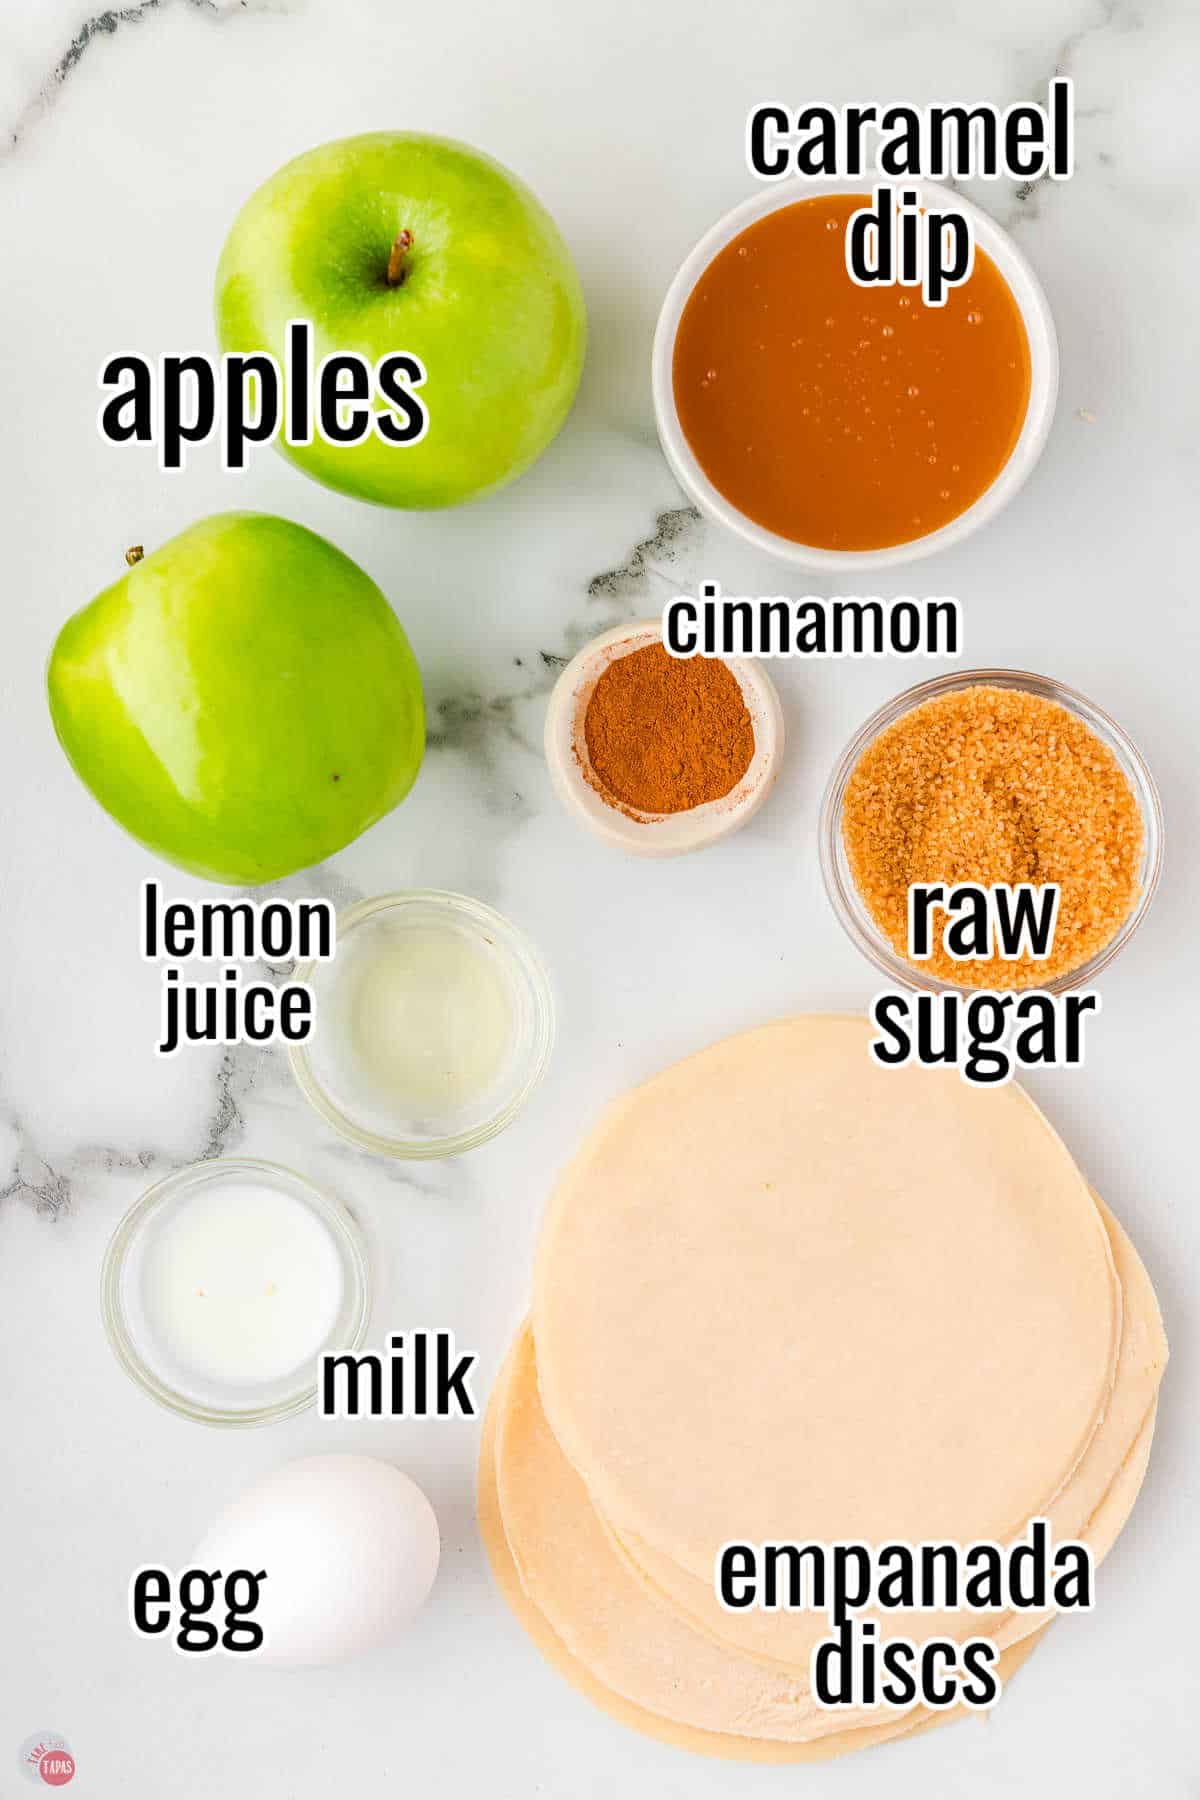 simple ingredients for sweet empanadas